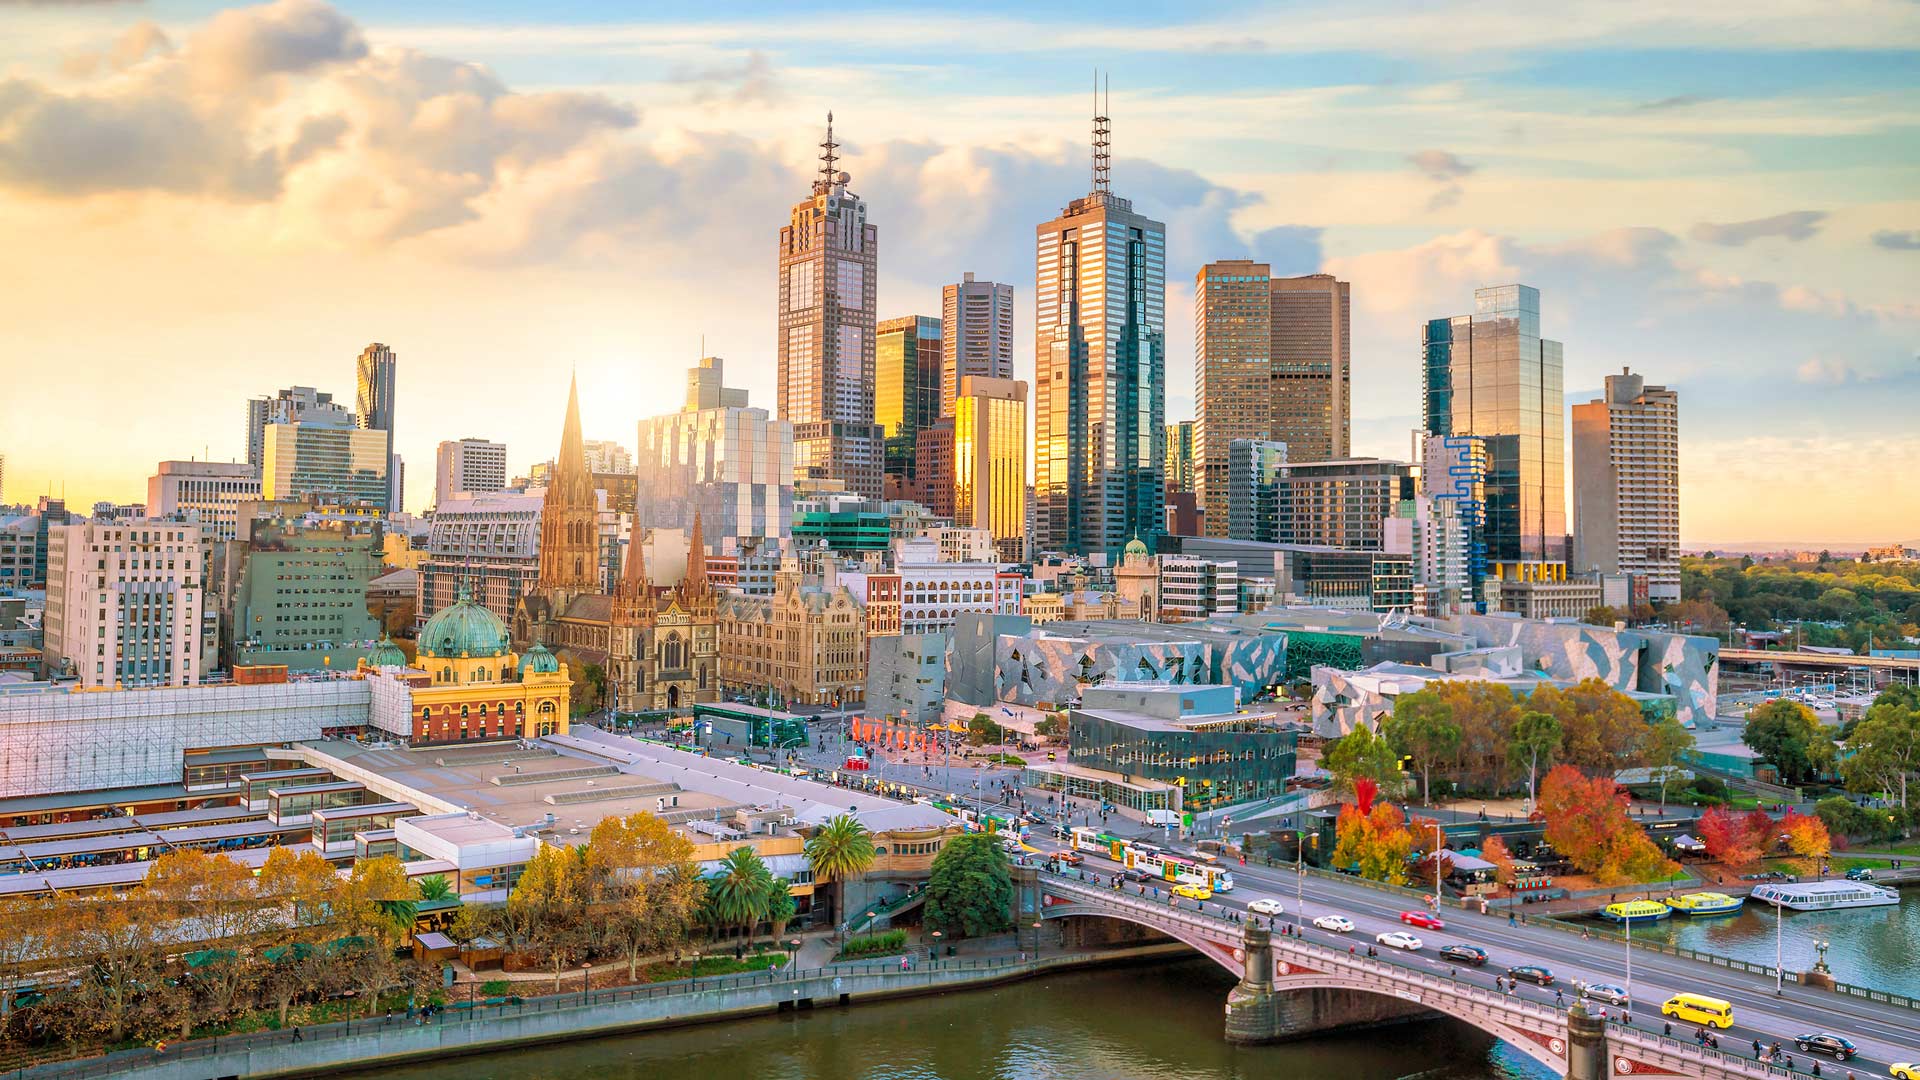 Die TOP 10 Melbourne Sehenswürdigkeiten - TUI.com Reiseblog ☀